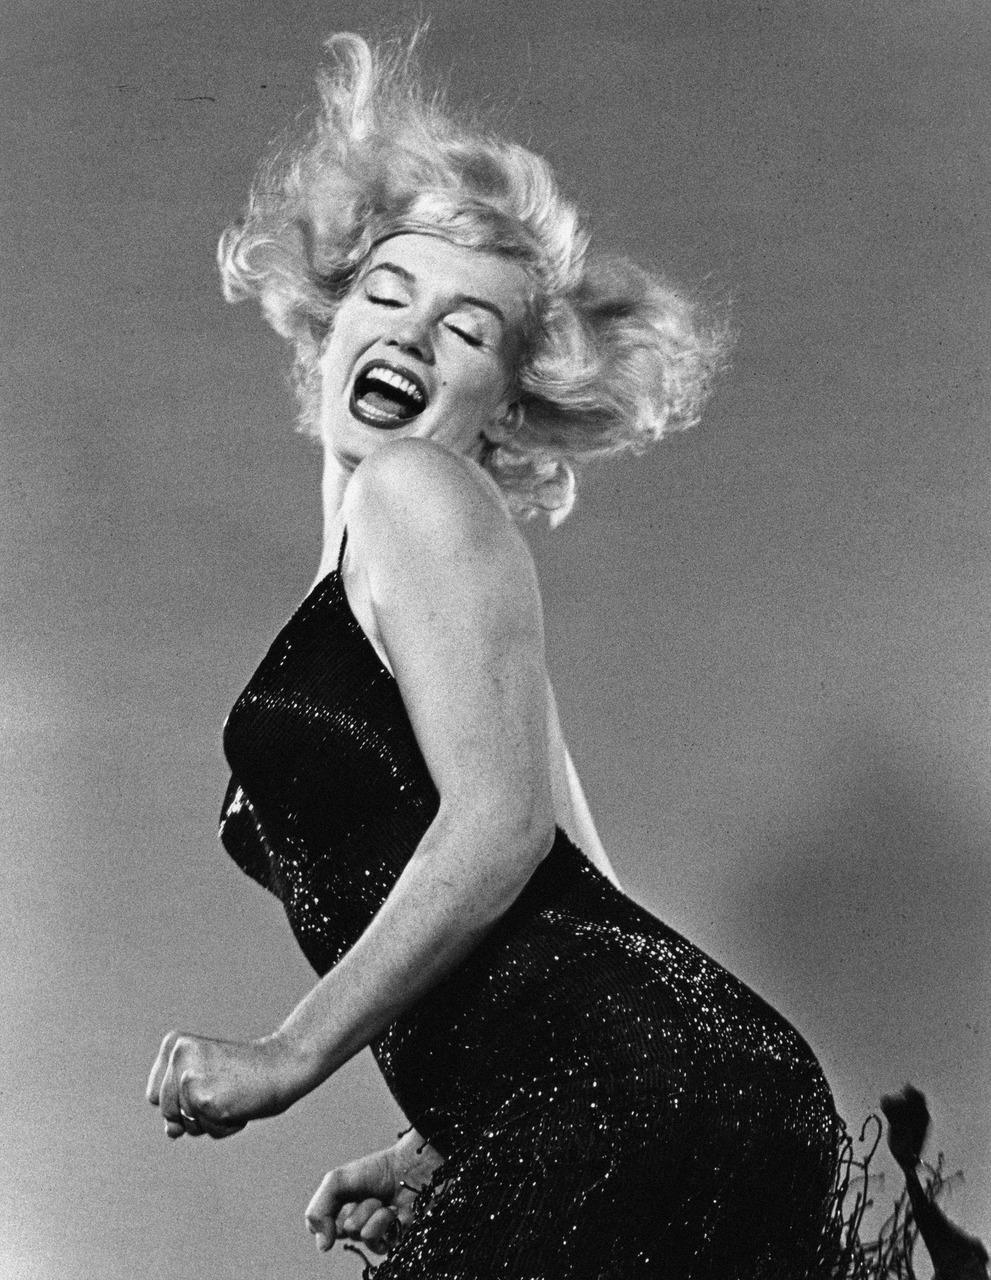 Fotos de artistas reconhecidos mundialmente, como a atriz Marilyn Monroe, estão na exposição permanente do MFF